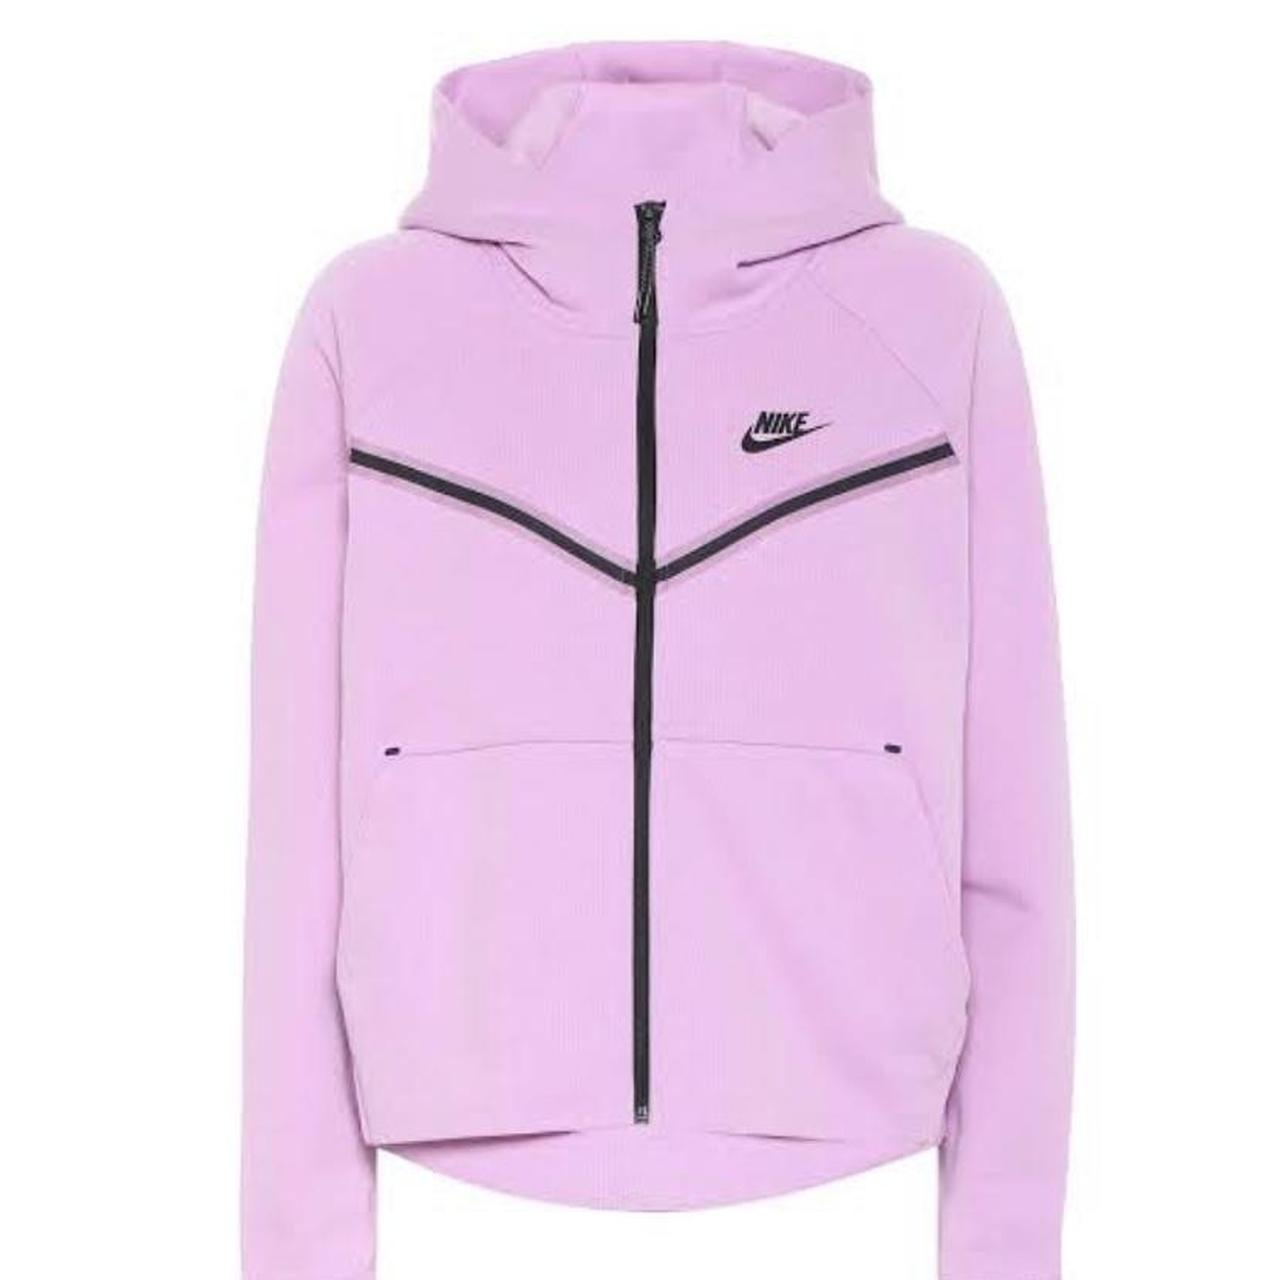 Pink Nike Tech Fleece!! In great condition! Size... - Depop